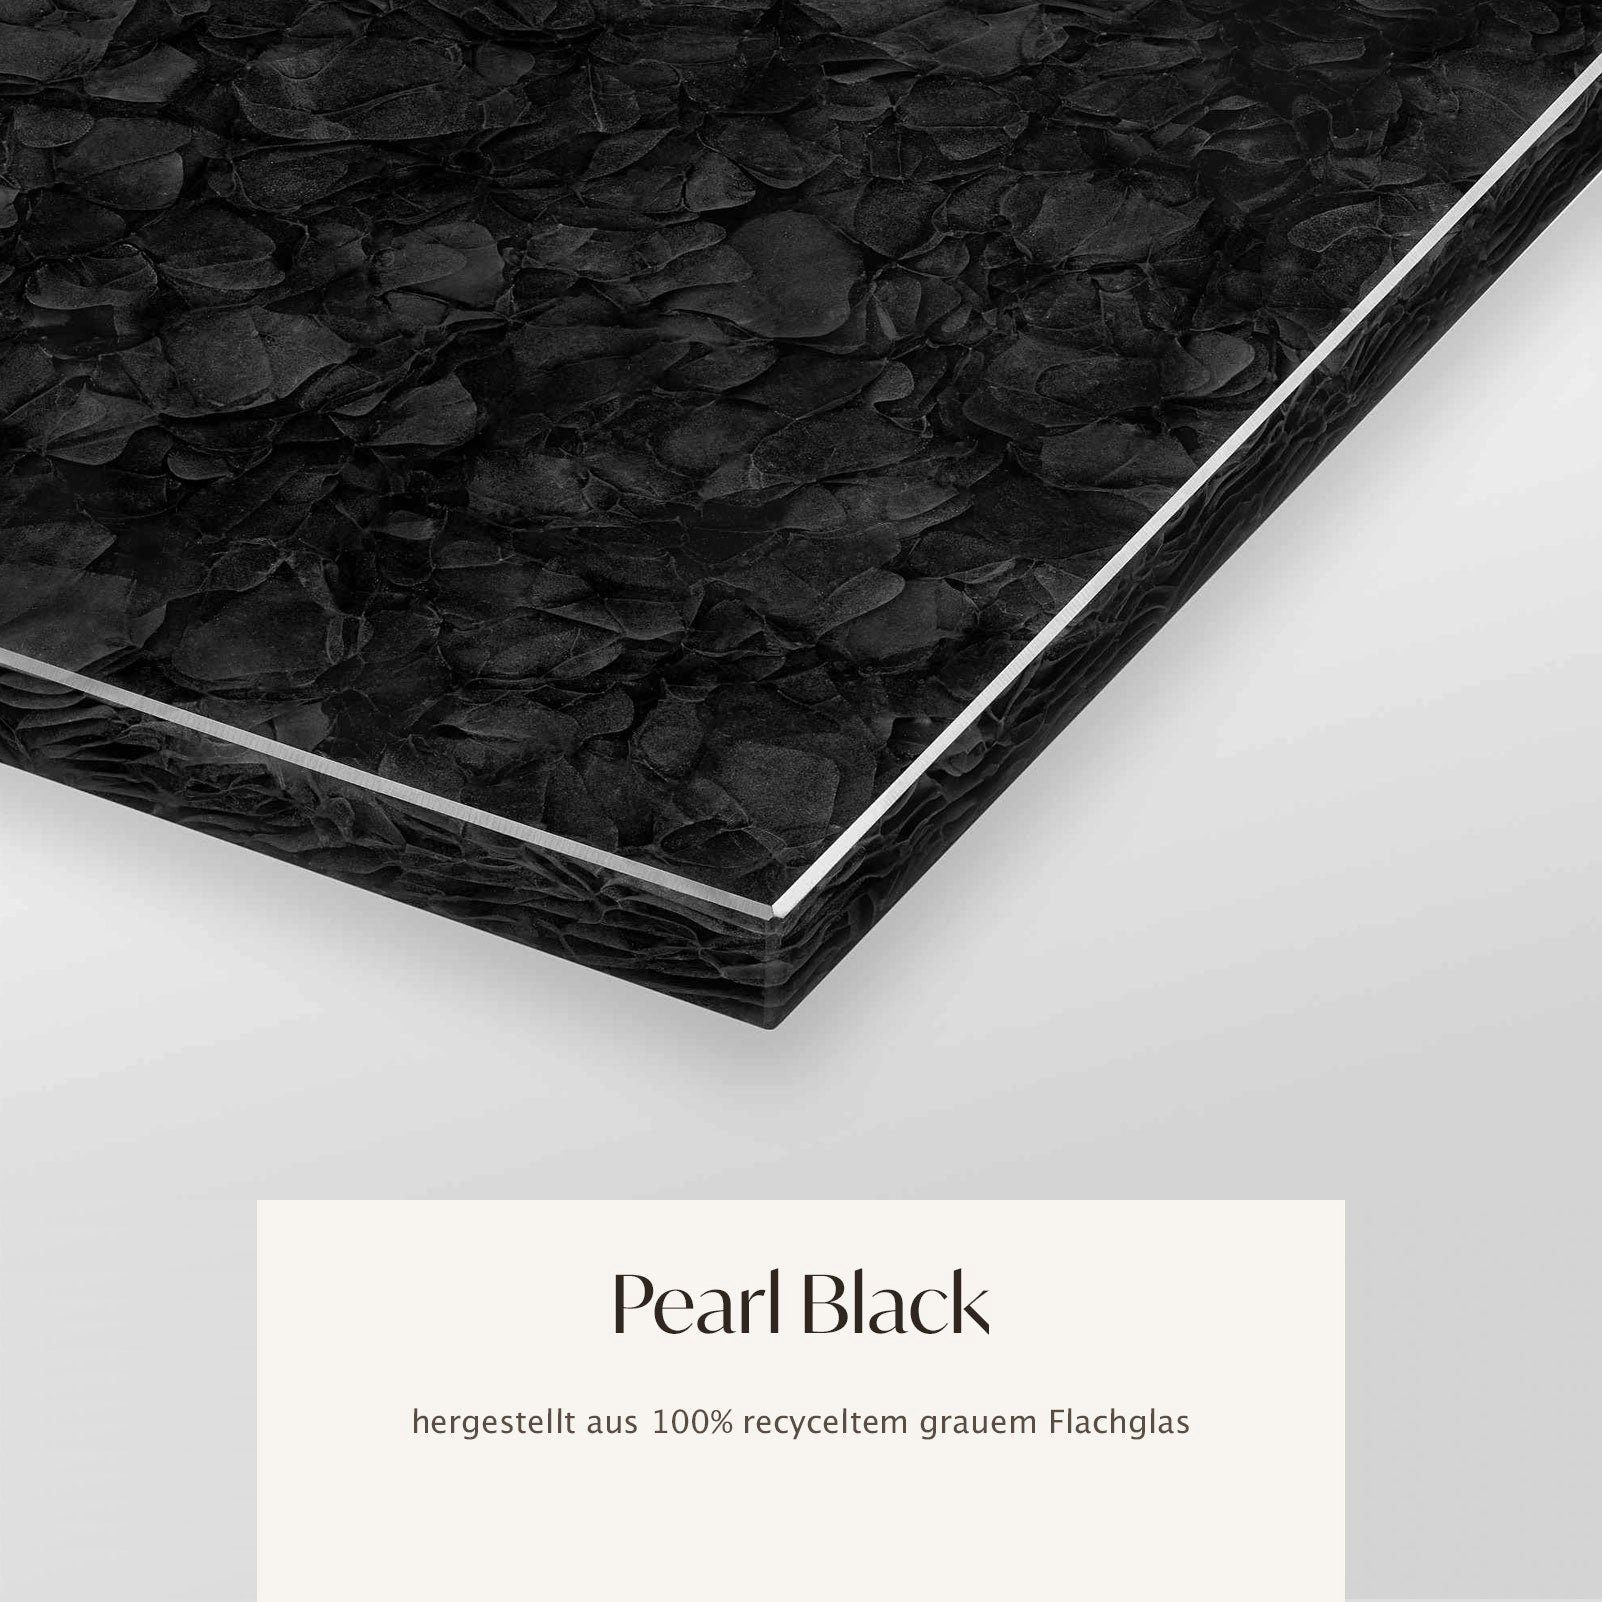 MAGNA Atelier Laptoptisch STOCKHOLM mit GLASKERAMIK, Laptoptisch eckig, schwarz Metallgestell, 40x30x68cm Pearl Black